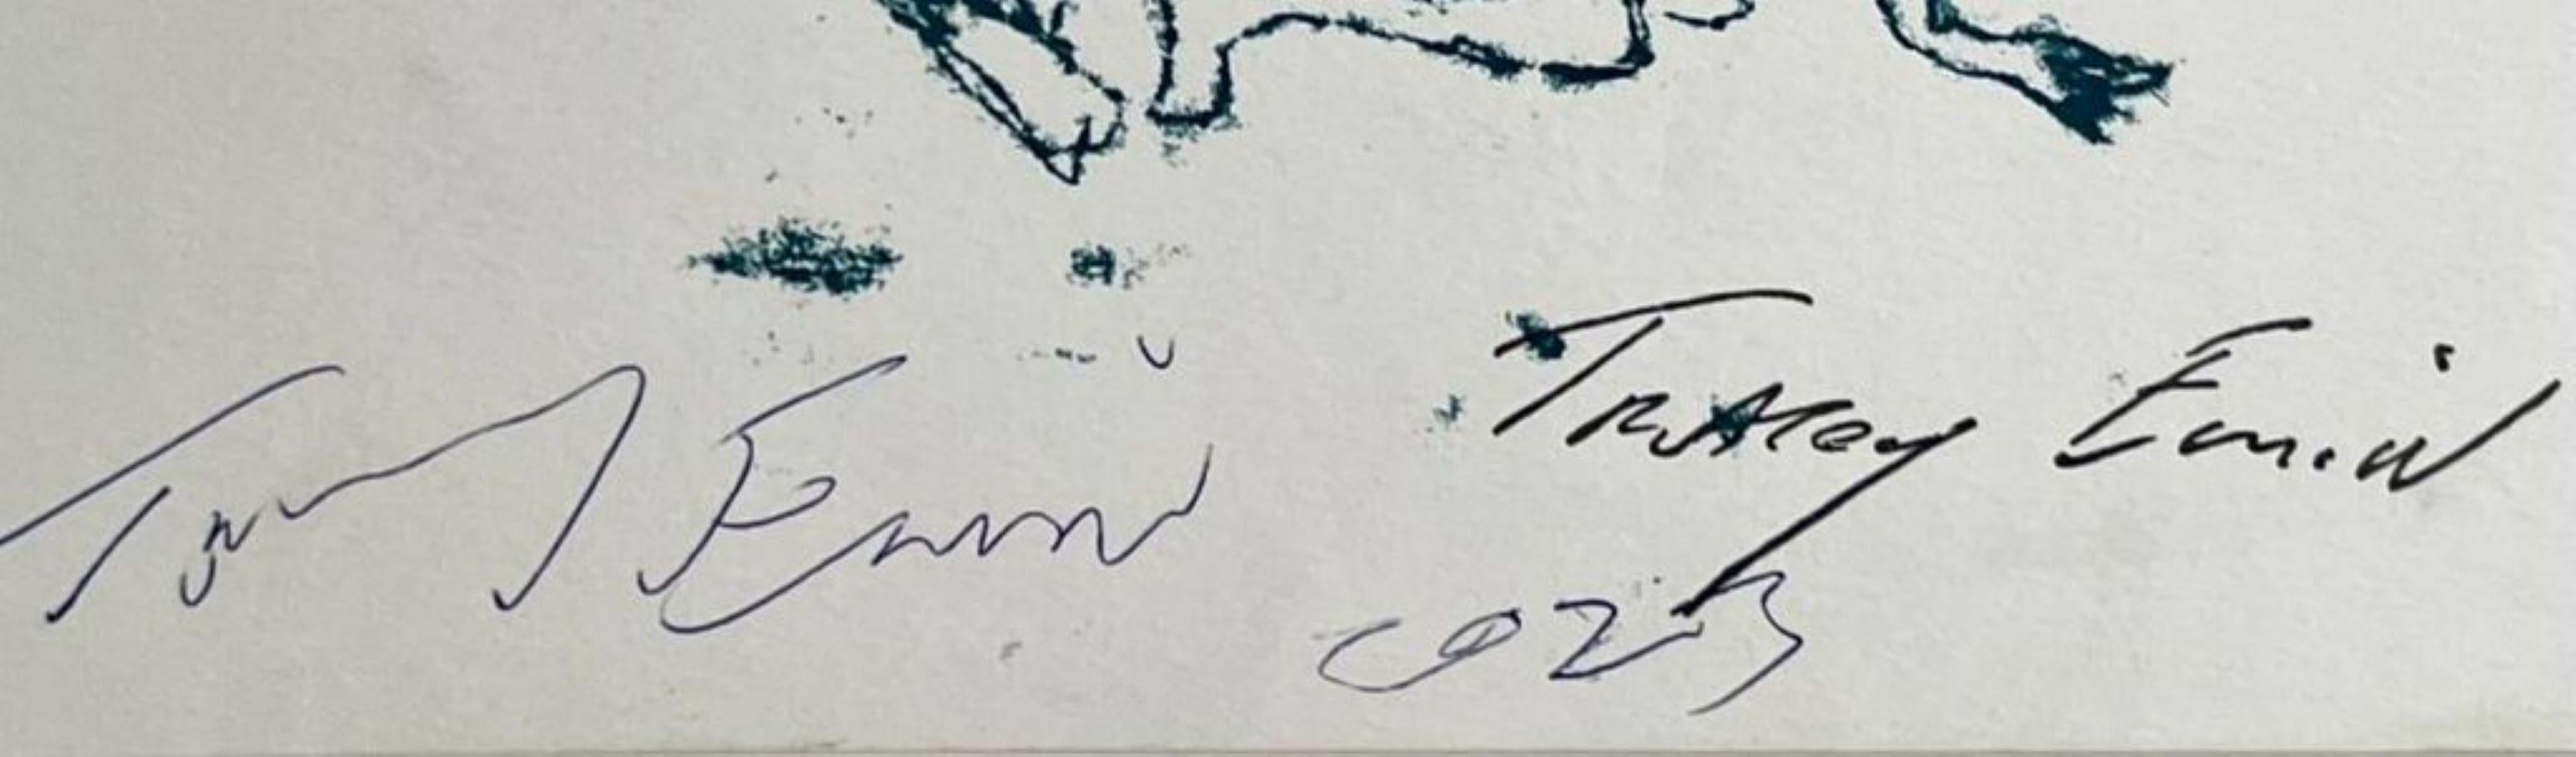 Tracey Emin
Every Bodies Been There (zweimal unterzeichnet), 1998
Lithographie auf Papier
Unter der vorhandenen Plattensignatur hat Tracey Emin das Werk ausnahmsweise handschriftlich signiert und für den jetzigen Besitzer mit dem Jahr 2023